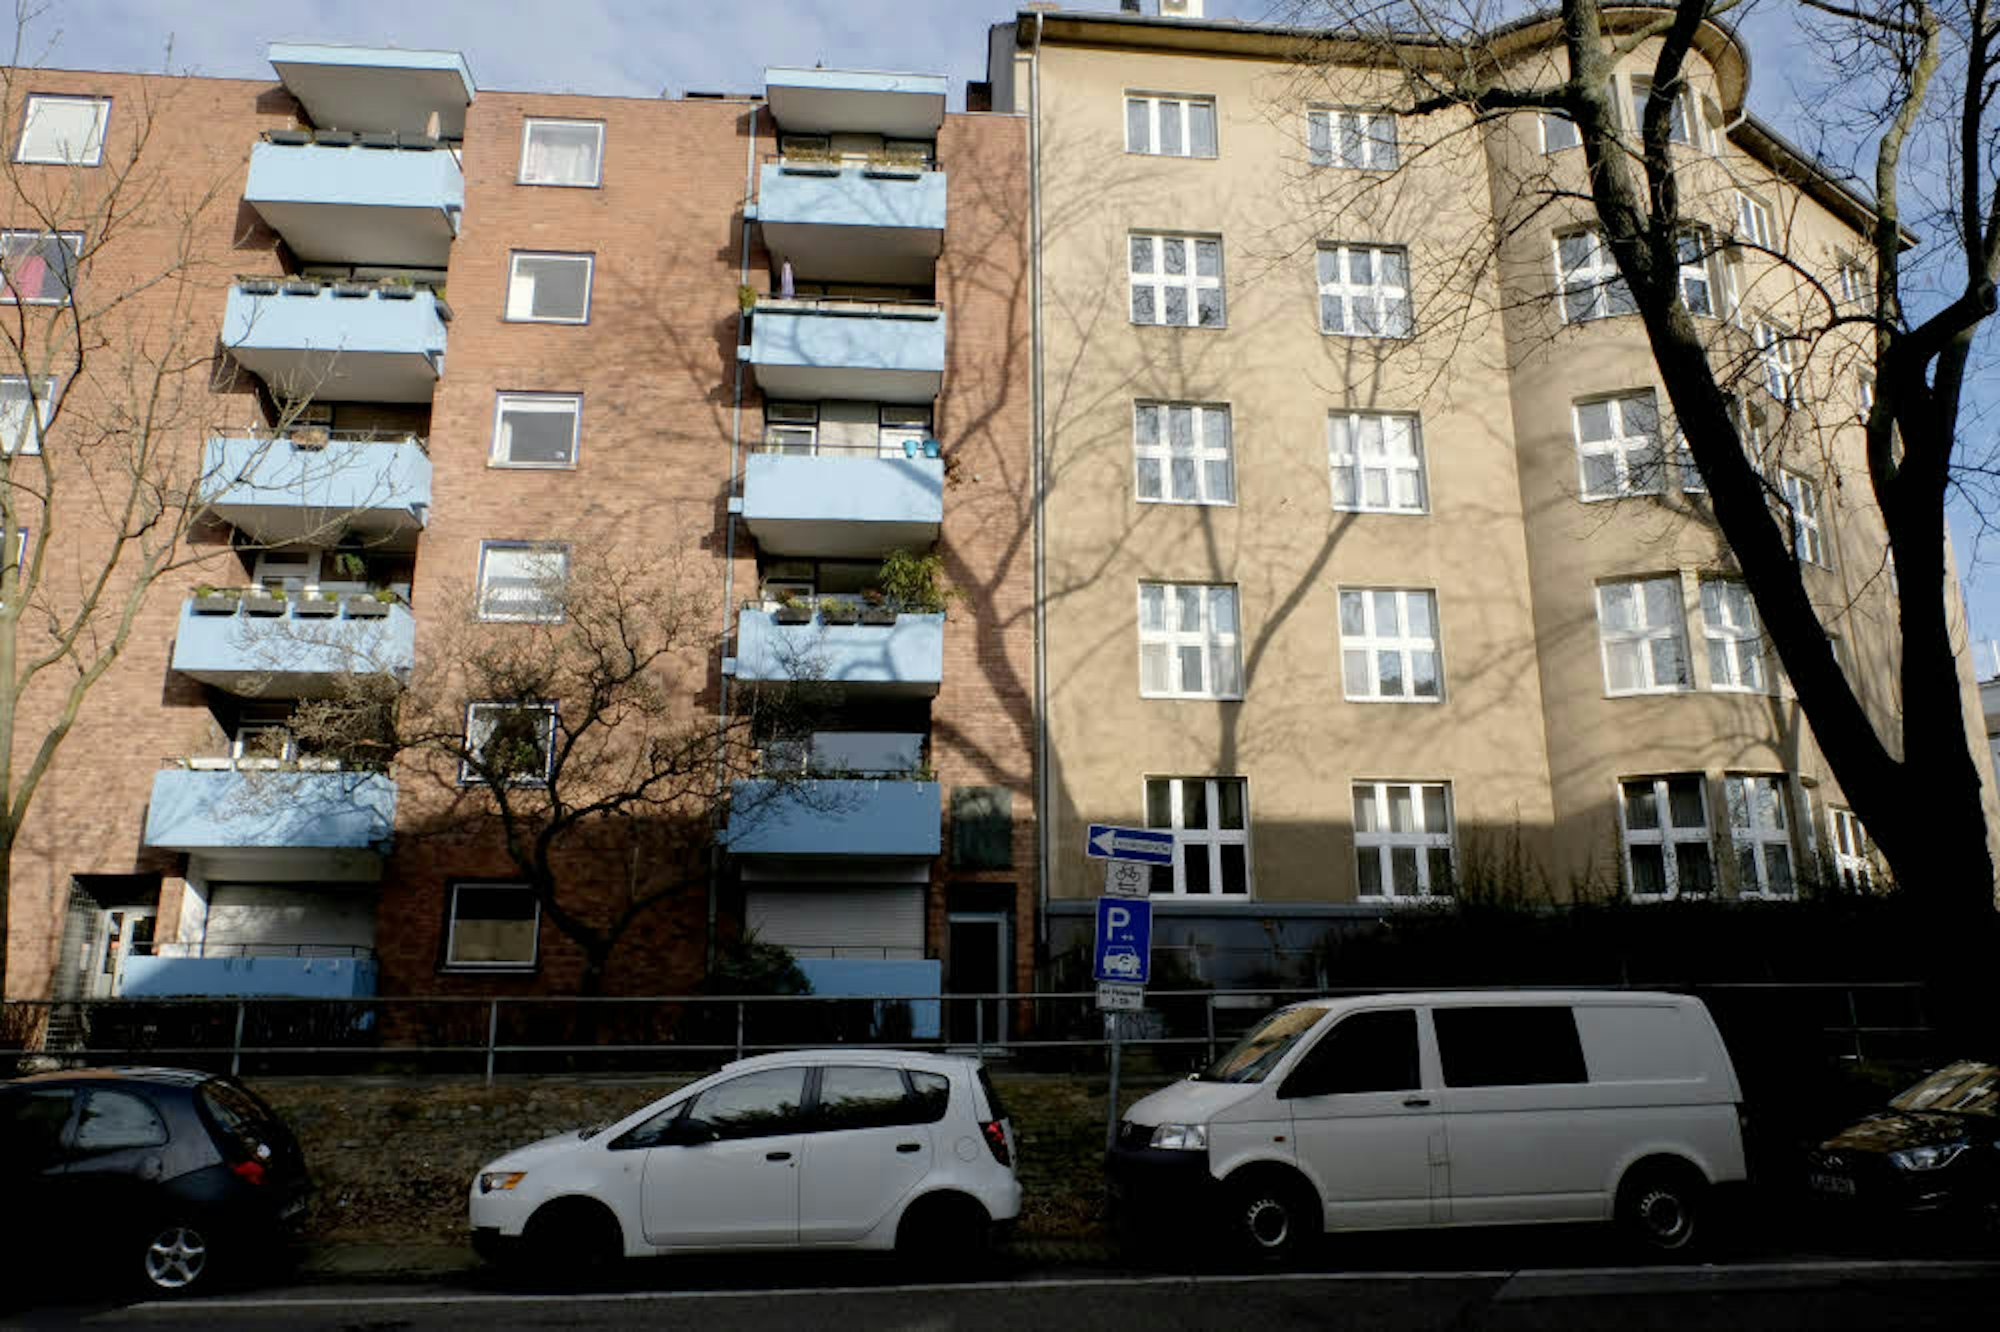 August Bebel wuchs in den Deutzer Kasematten auf. Heute findet sich an der Kasemattenstraße 8 moderne Wohnbebauung. Eine Seltenheit für Köln: Eine Gedenktafel erinnert an den berühmten Arbeiterführer, der hier das Licht der Welt erblickte.